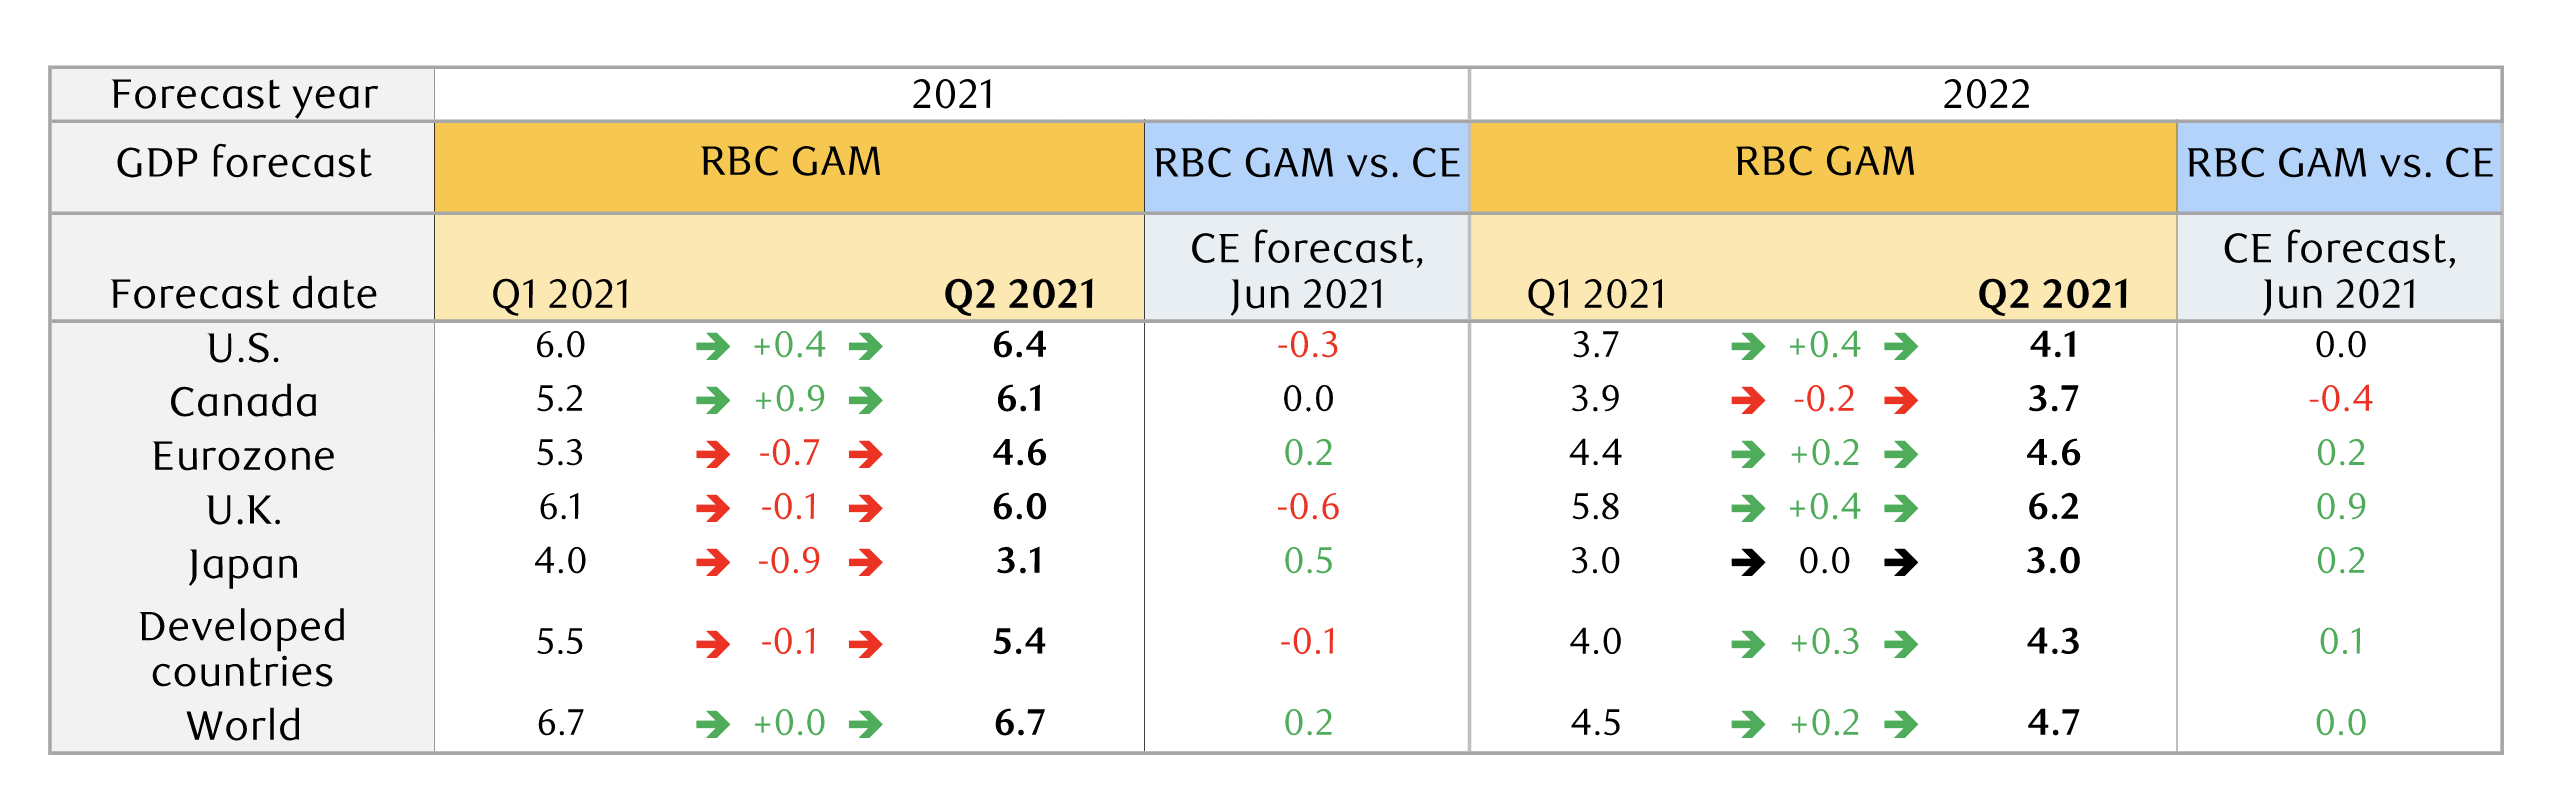 RBC GAM GDP forecast revisions